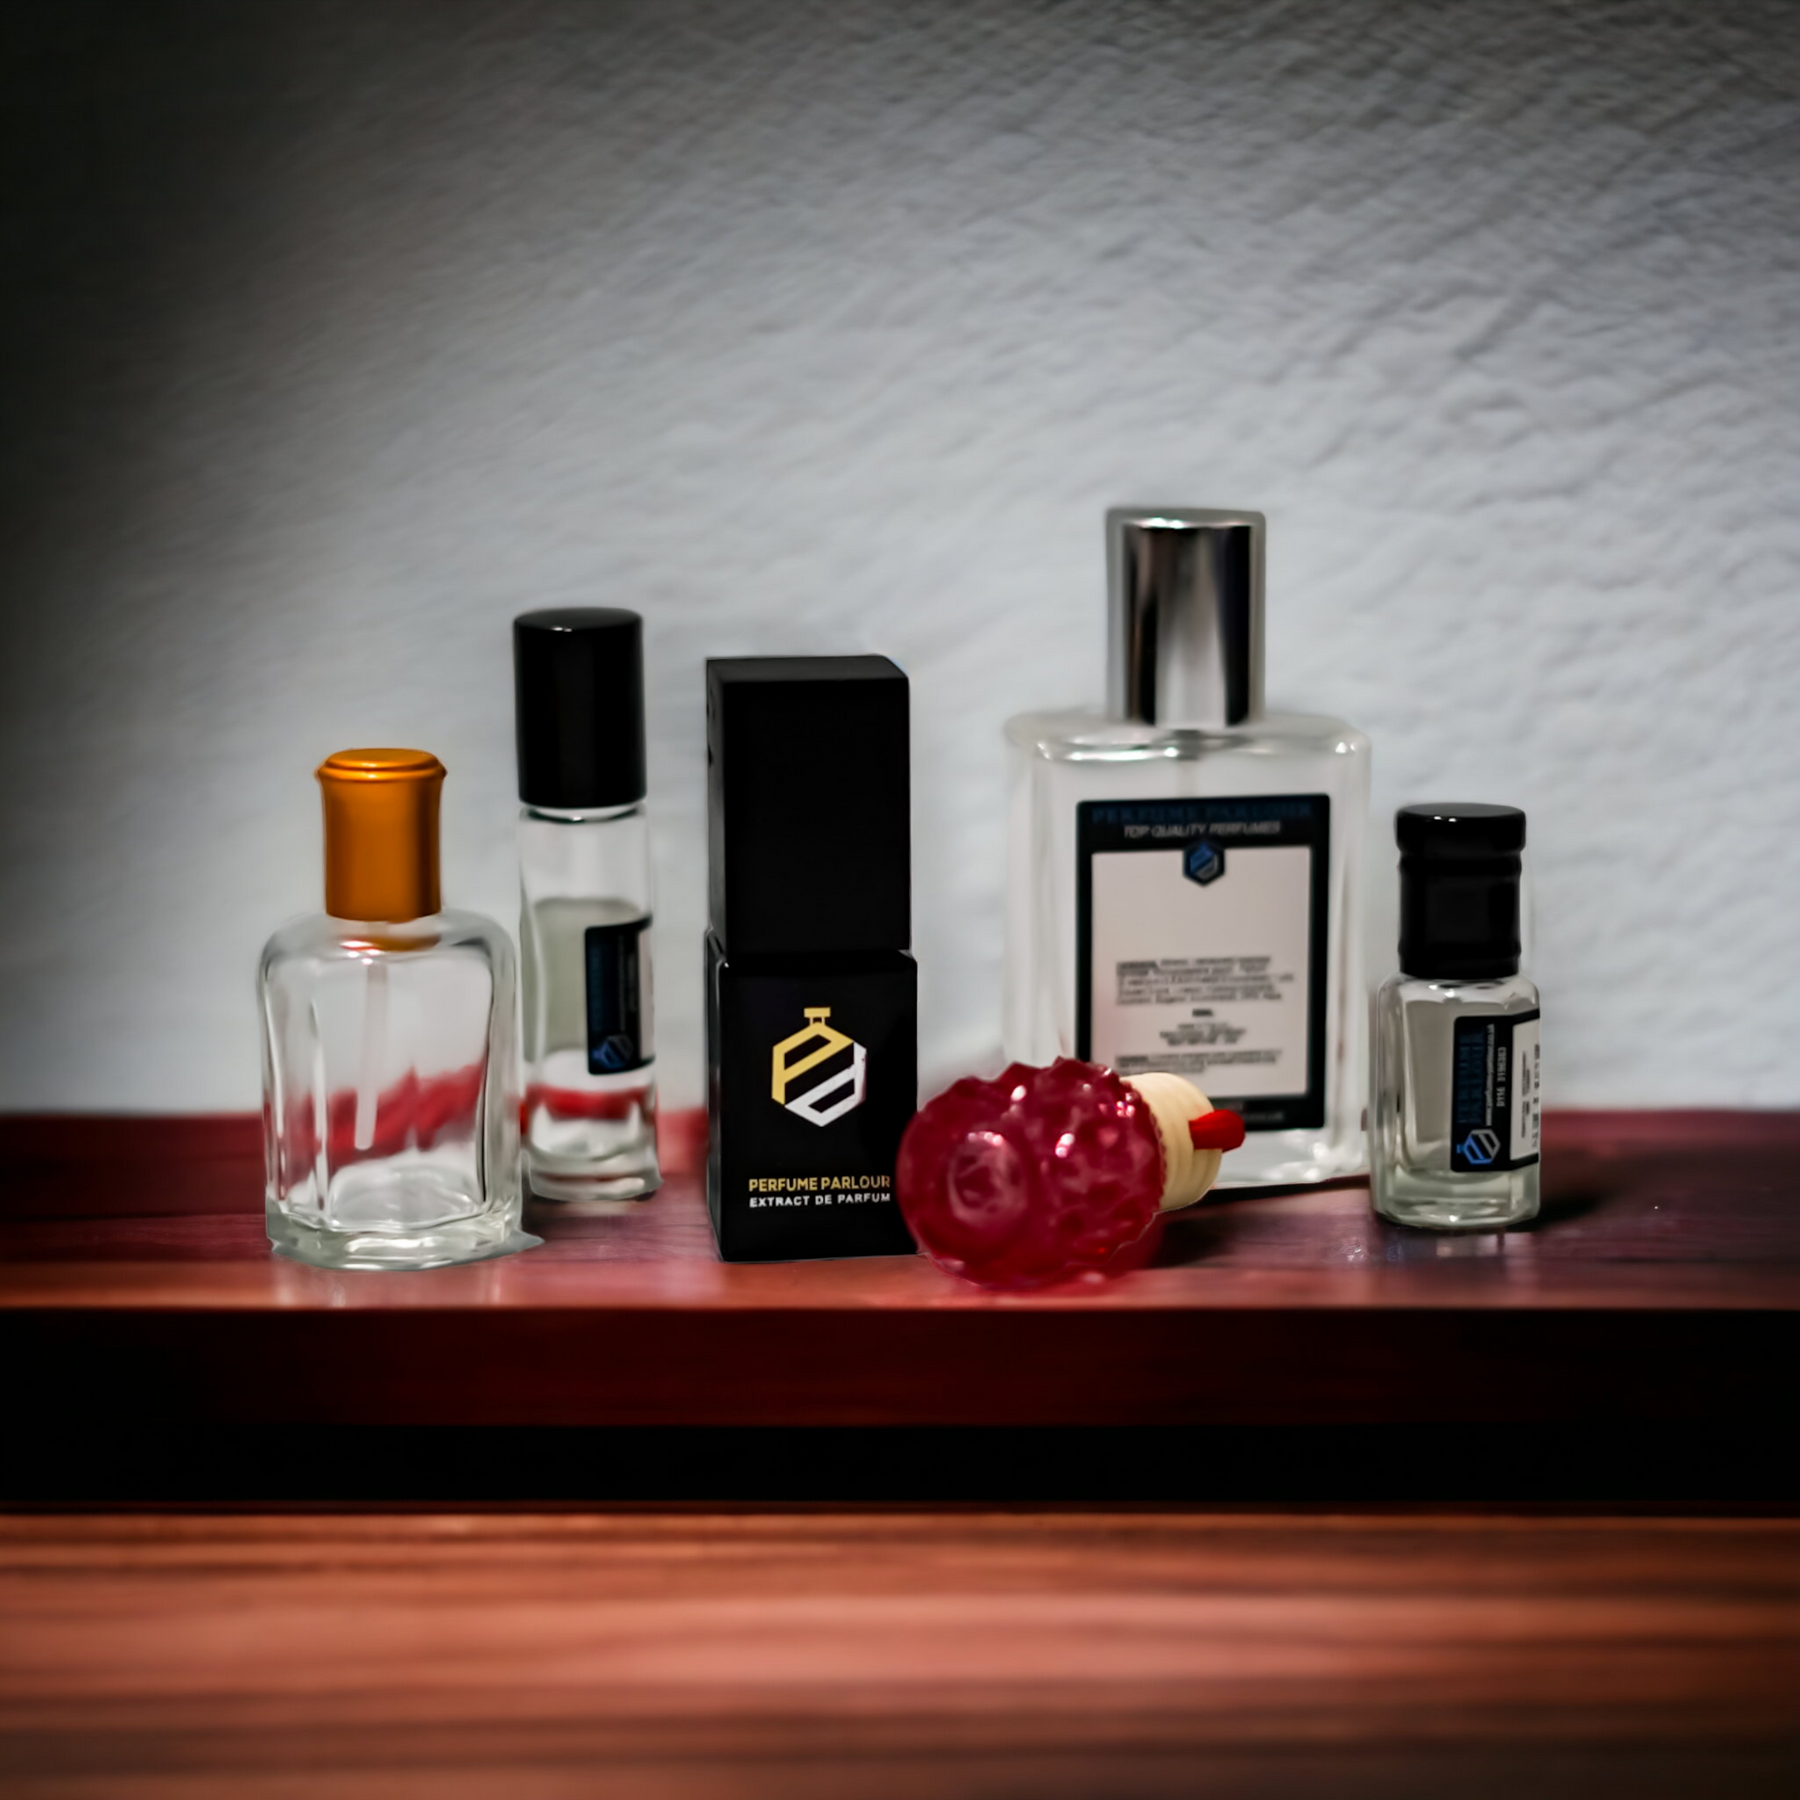 Buy Louis Vuitton - Matiere Noire for Women Perfume Oil